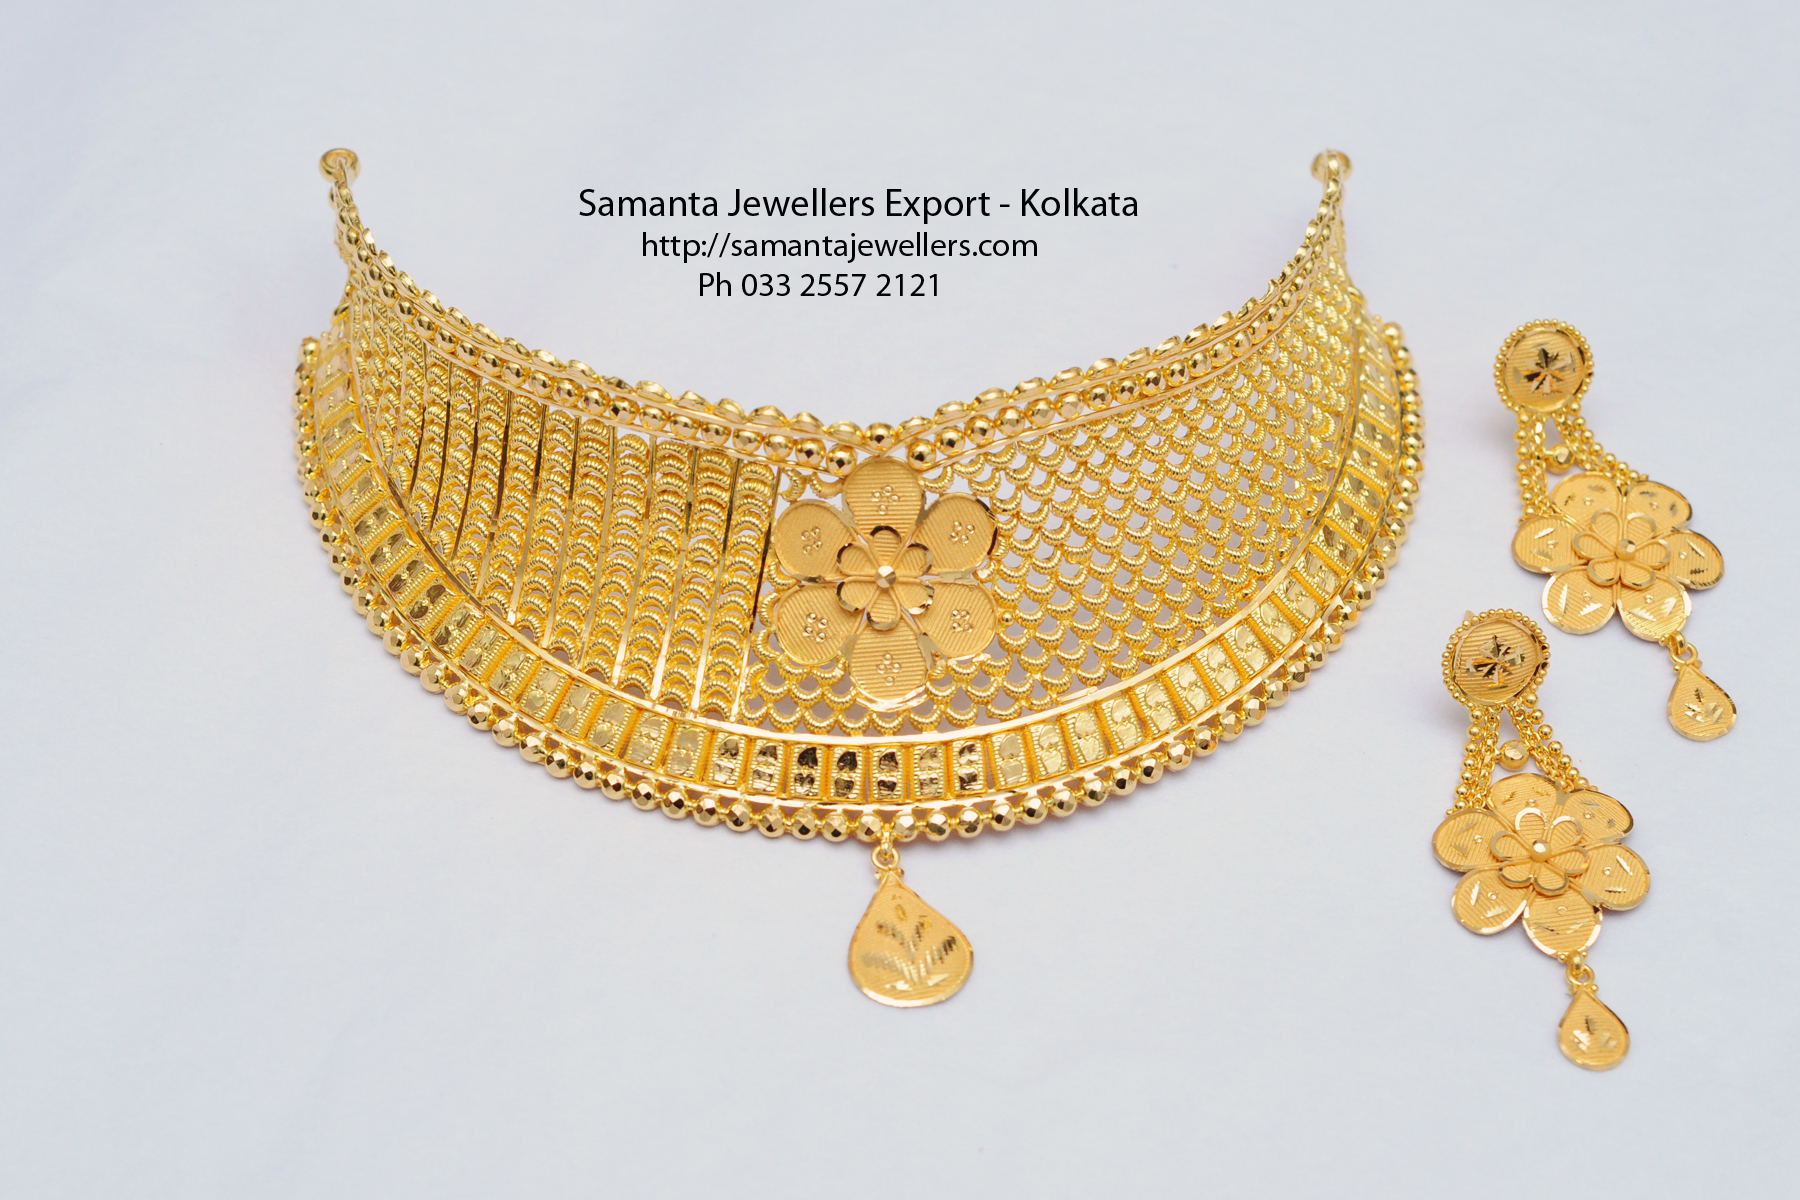 light weight fancy wedding gold choker necklace designs